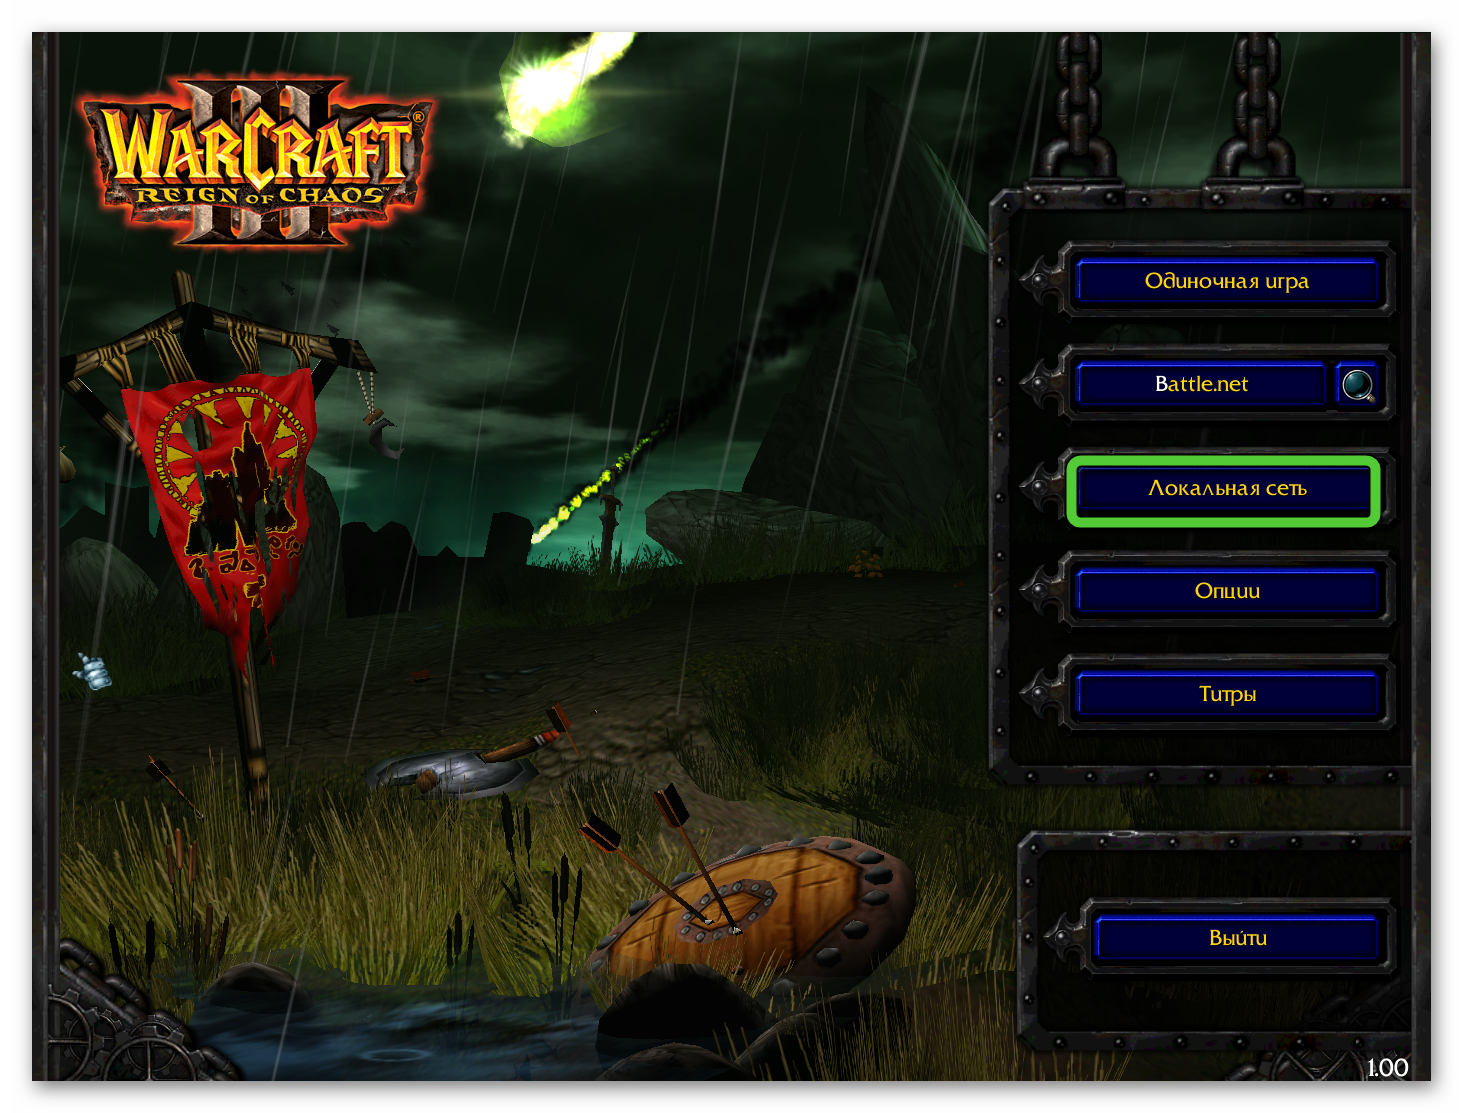 Пункт Локальная сеть в меню Warcraft III